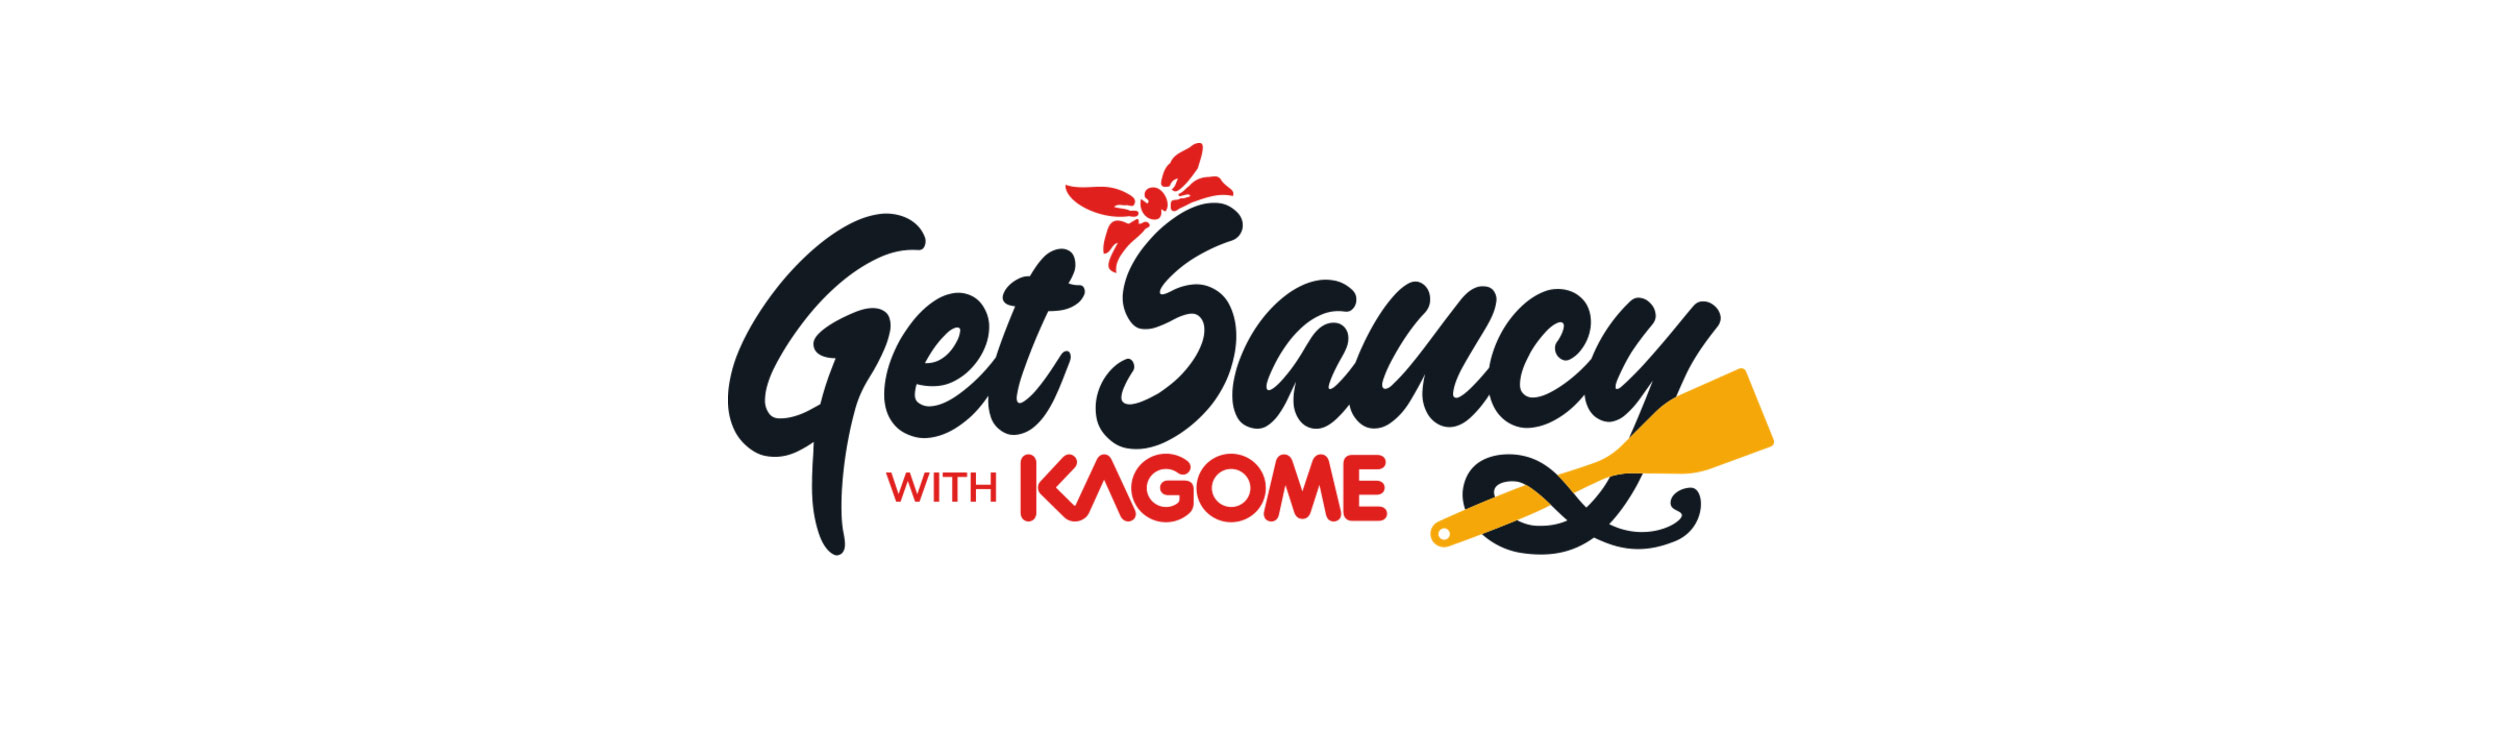 Kagome Newsletter – October 2020